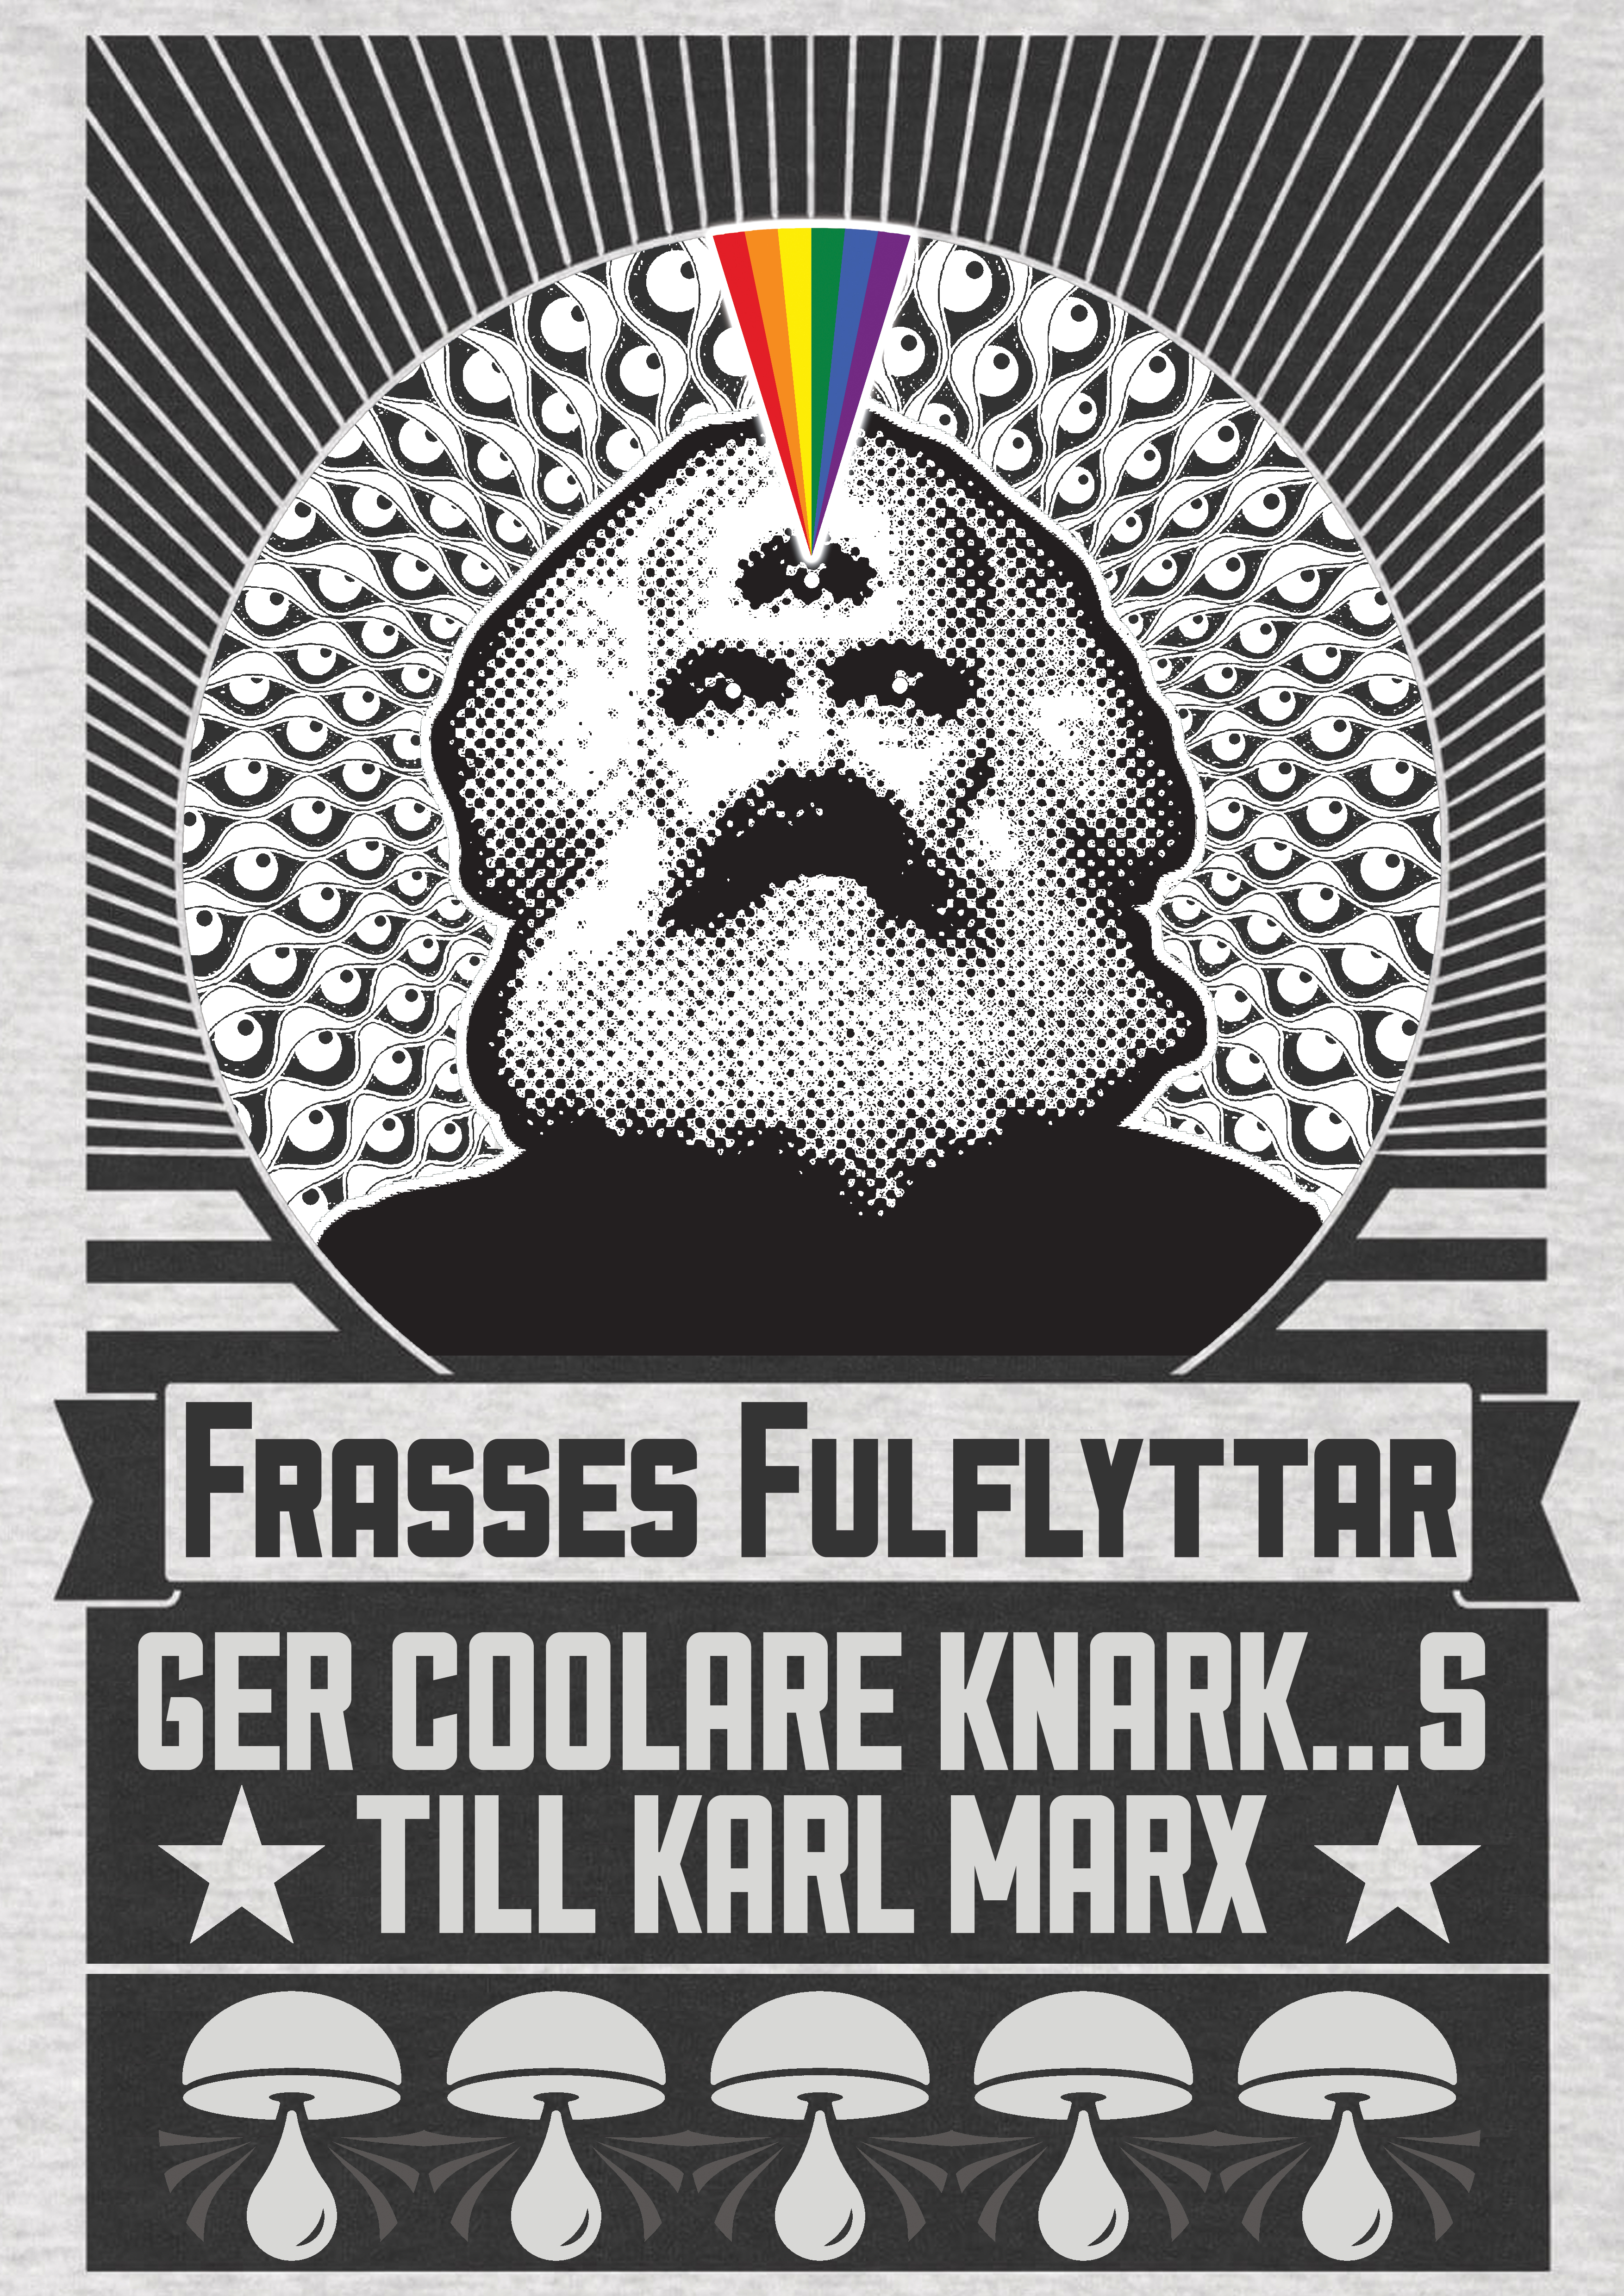 Coolare-KNark-till-Karl-Marx